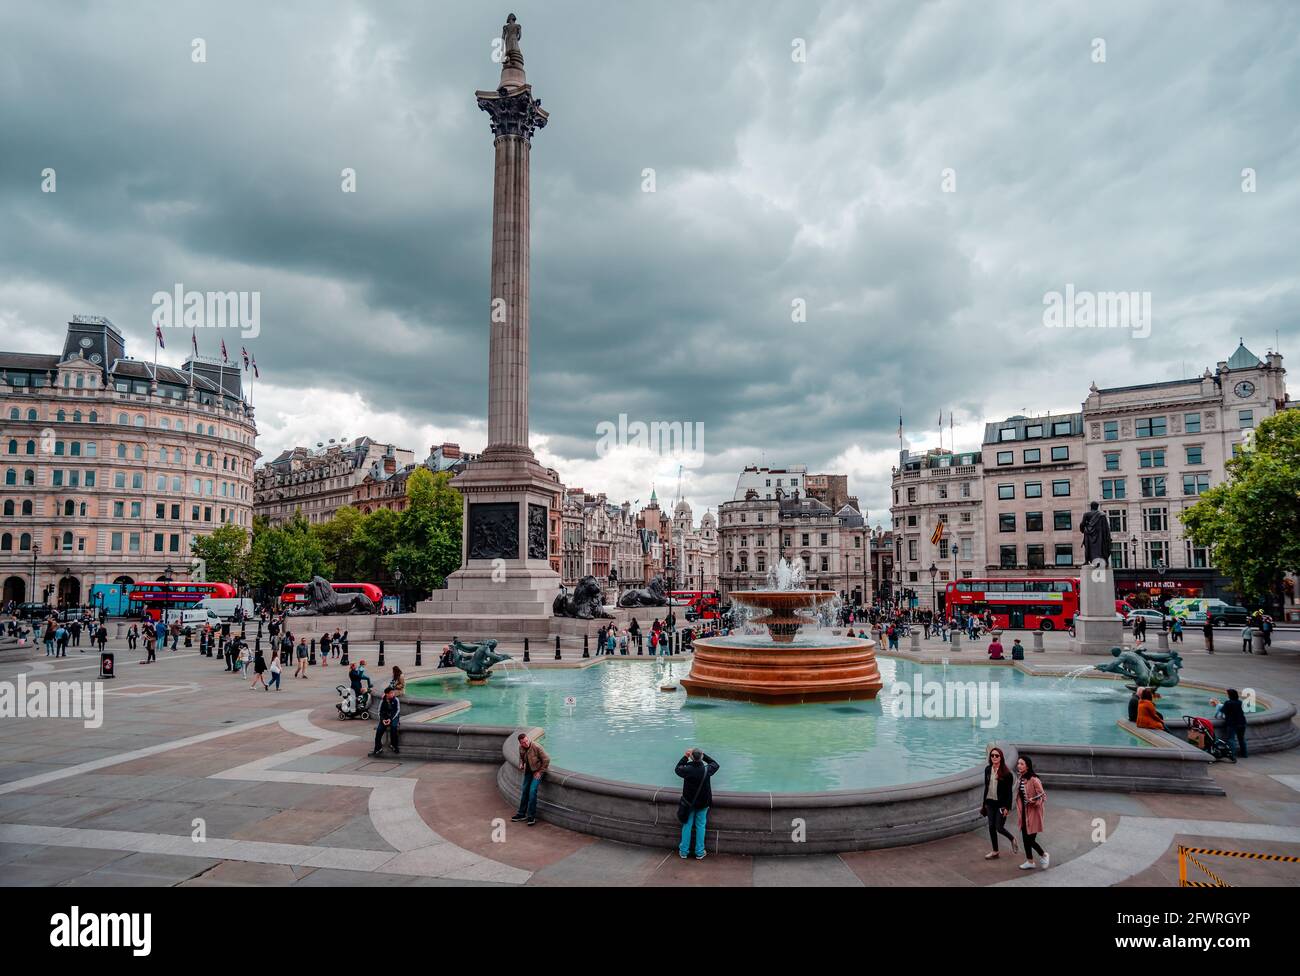 Londres, Reino Unido - Septiembre 9 2015: Vista de Trafalgar Square y la columna de Nelson mirando hacia el sur hacia Whitehall. Foto de stock